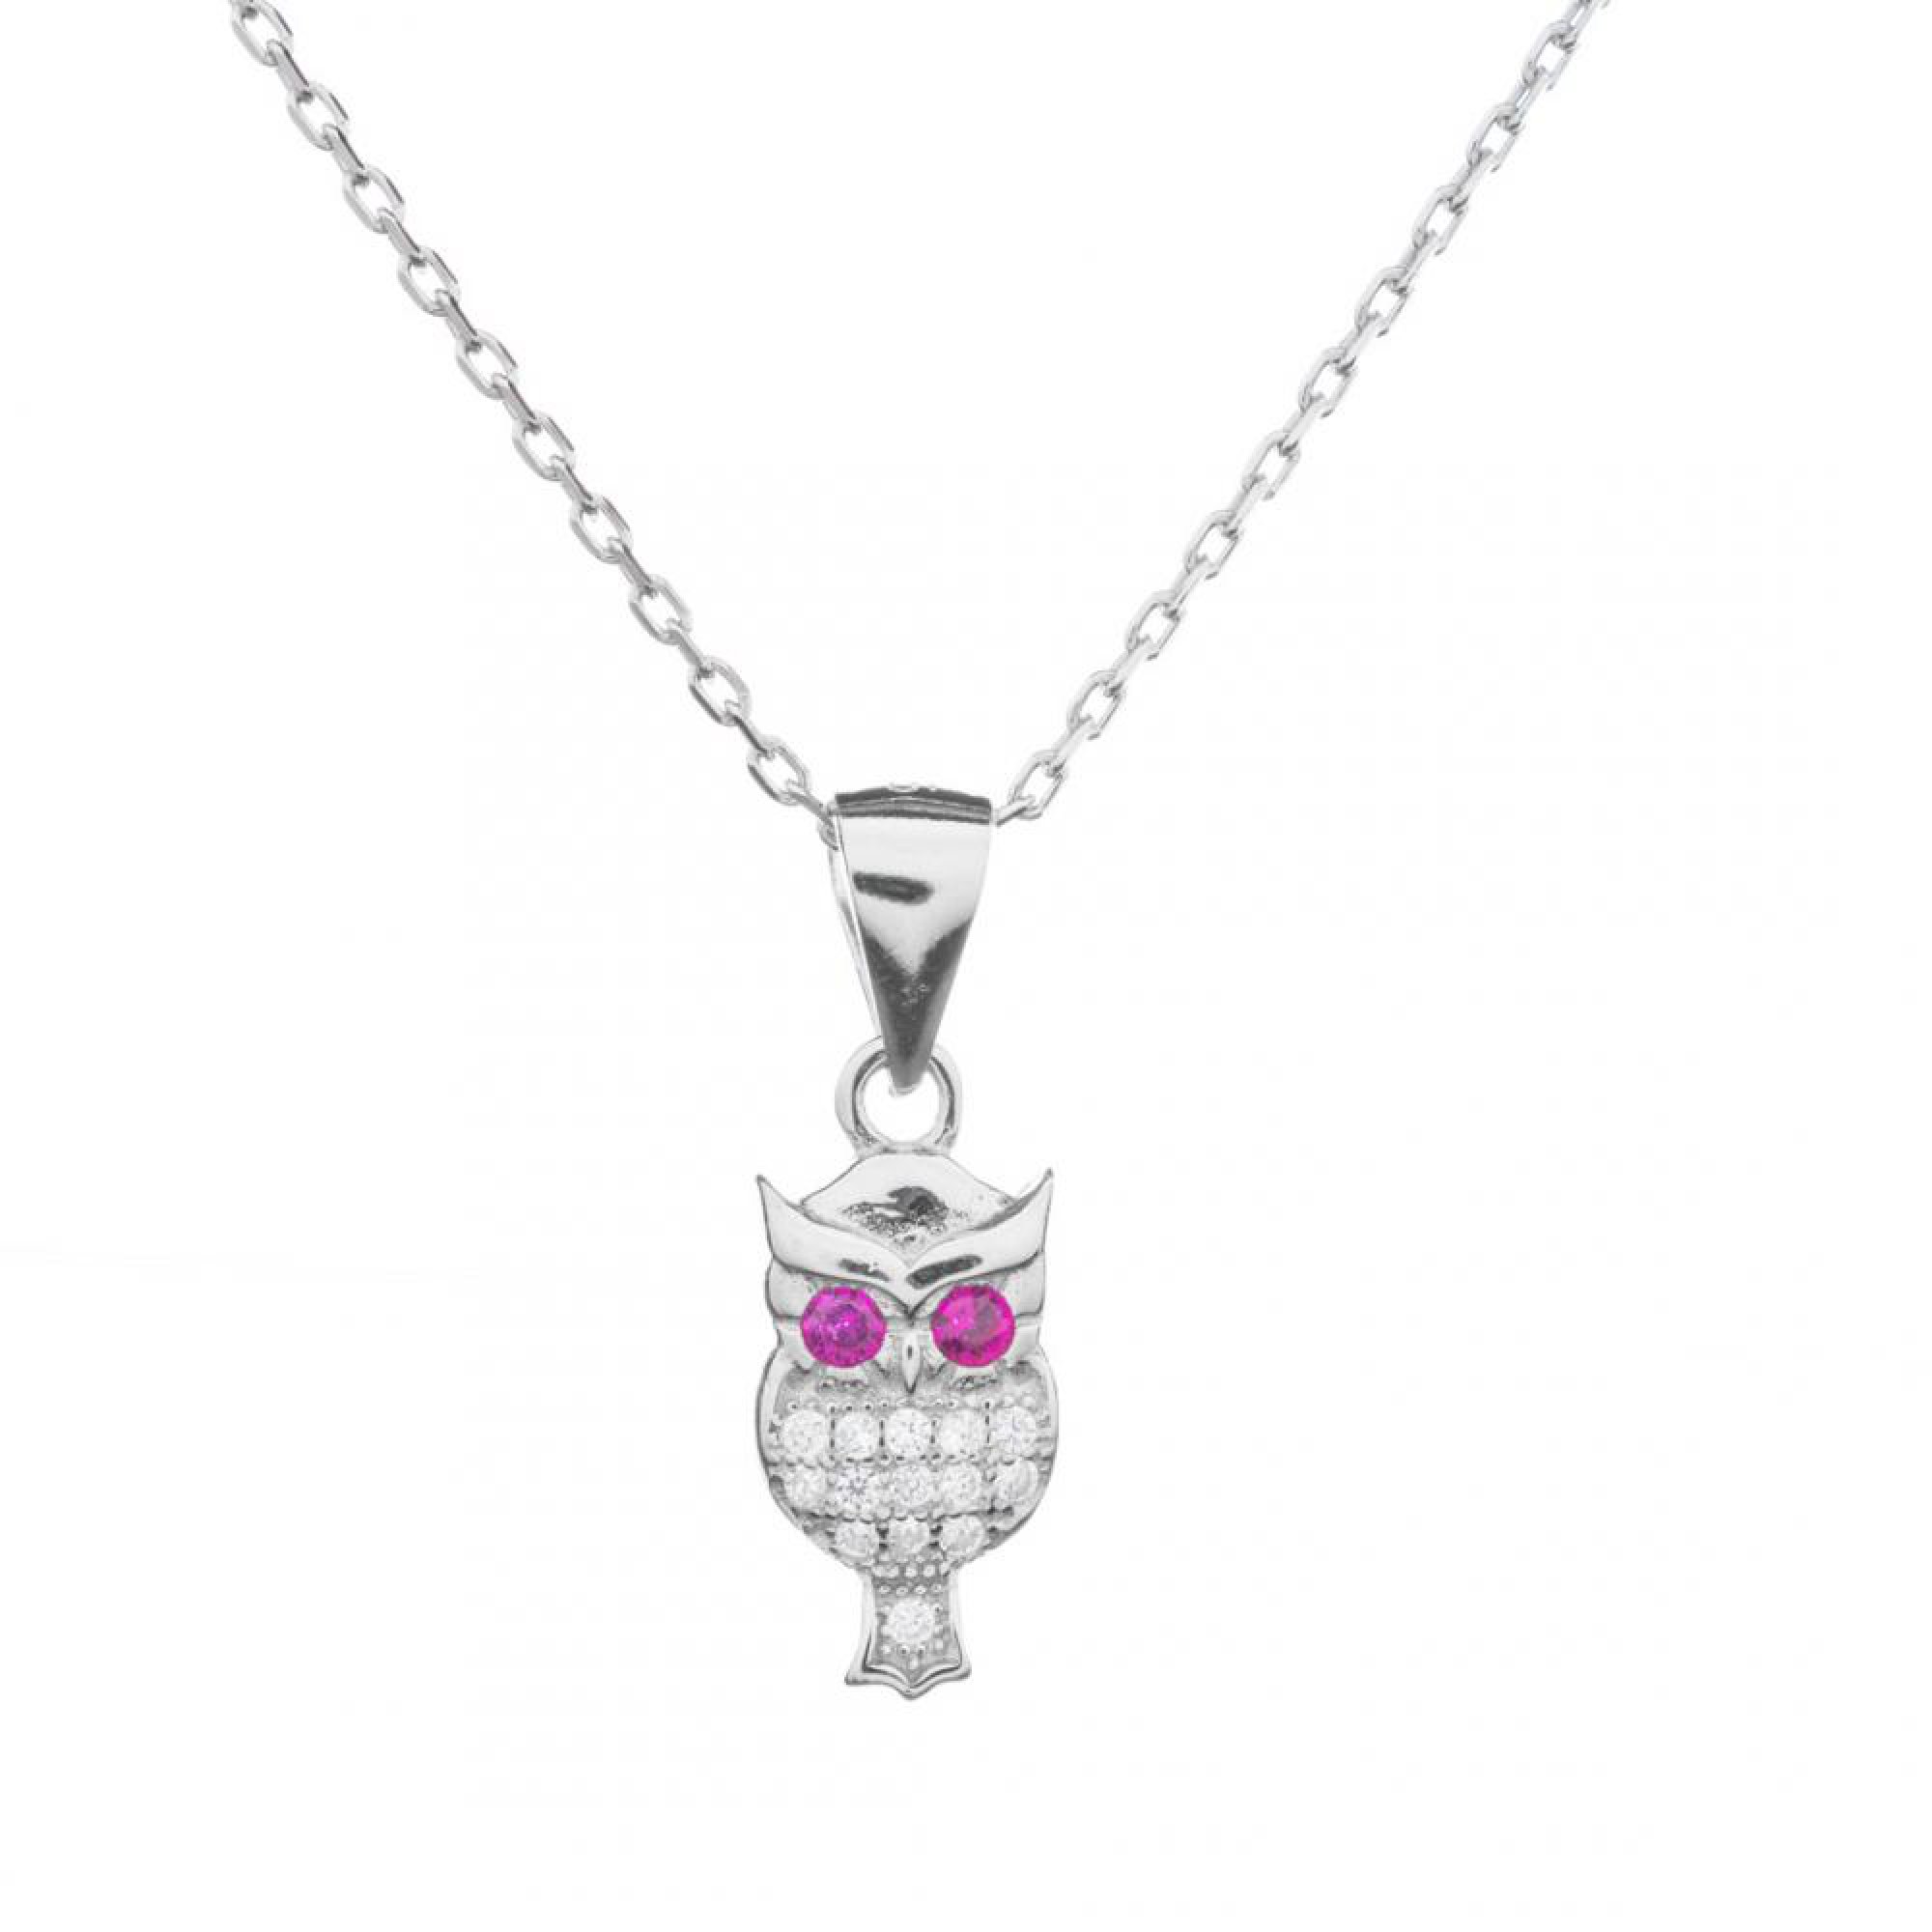 Owl pendant with zircon stones